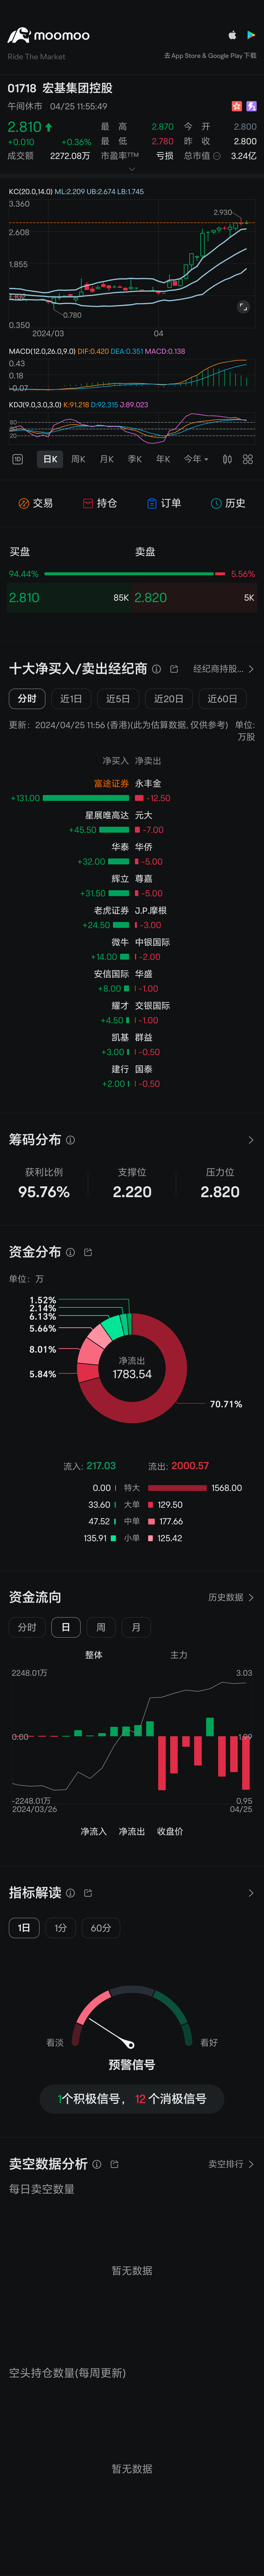 $宏基集团控股 (01718.HK)$ 已经尽头，看到很多韭菜